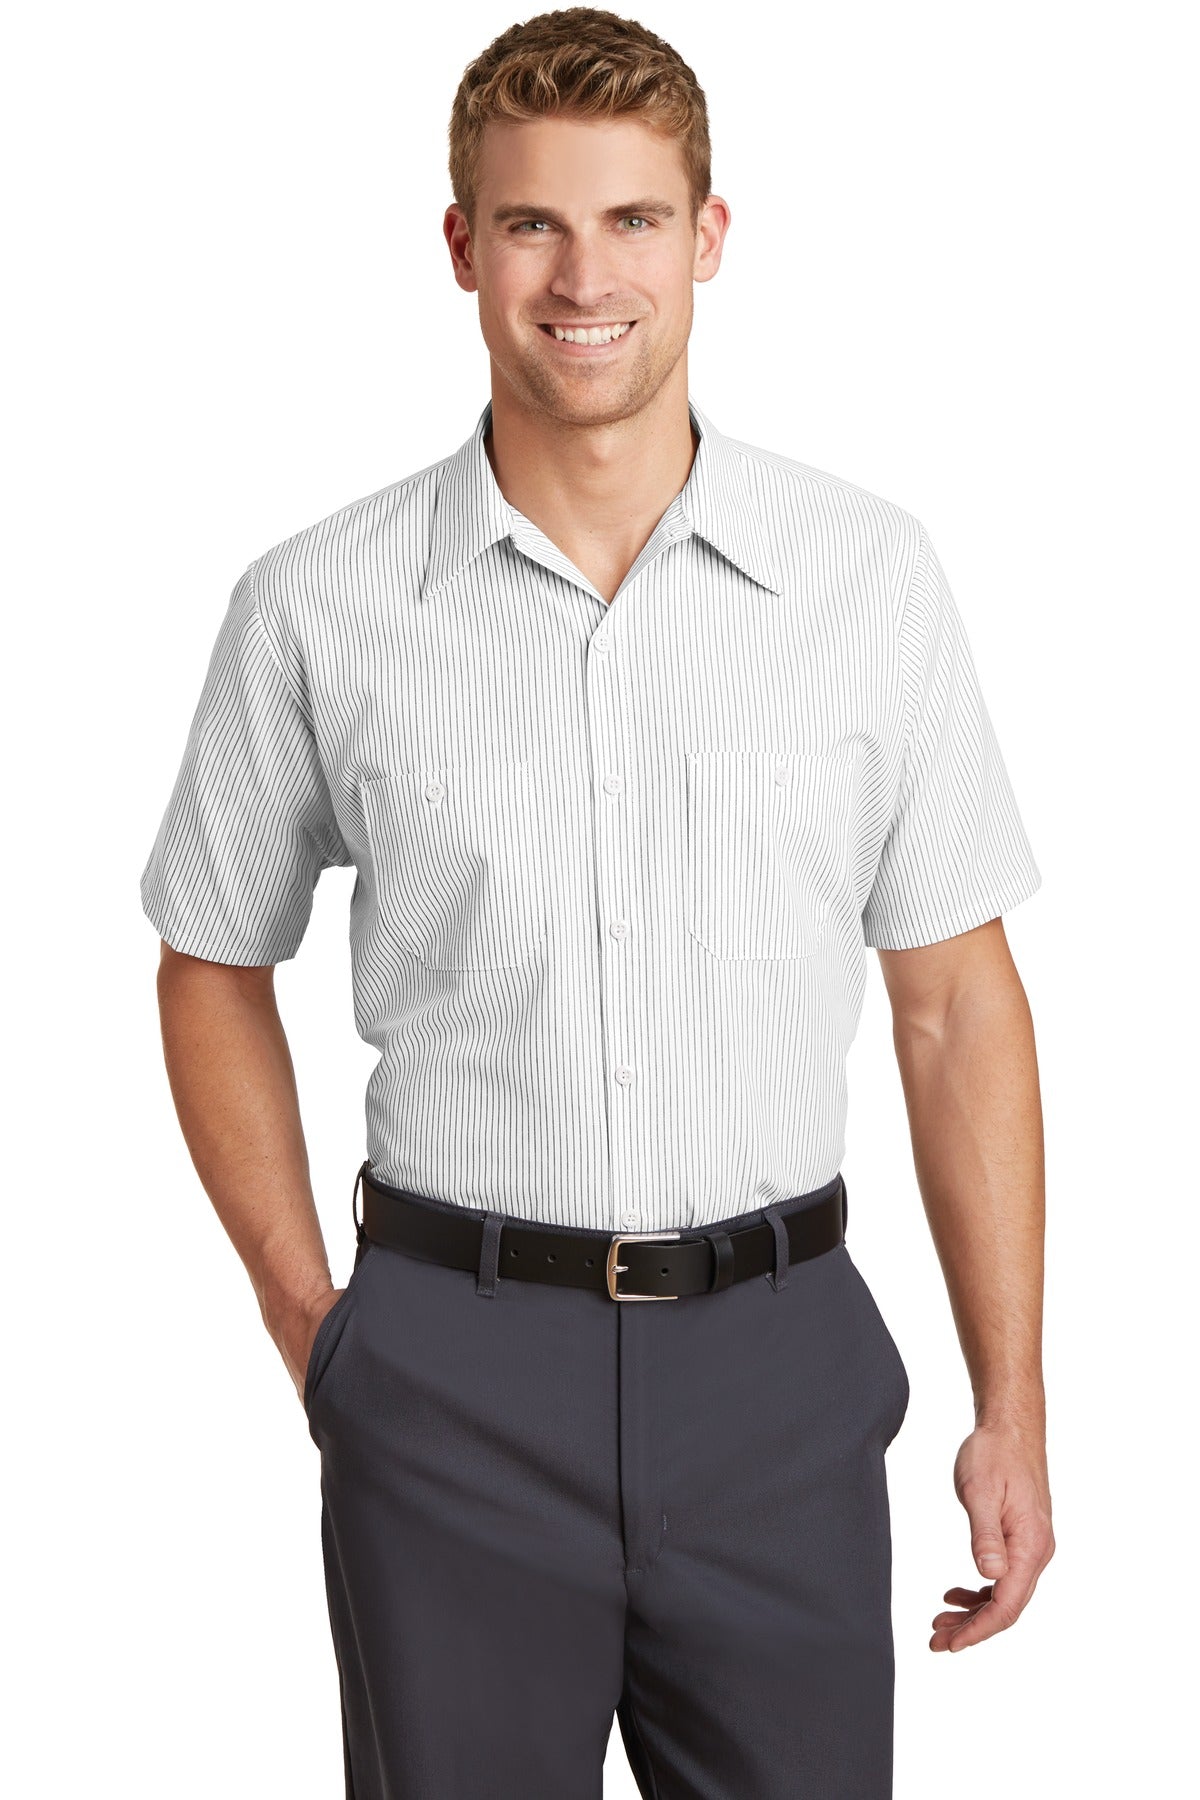 Red Kap Long Size Short Sleeve Striped Industrial Work Shirt. CS20LONG